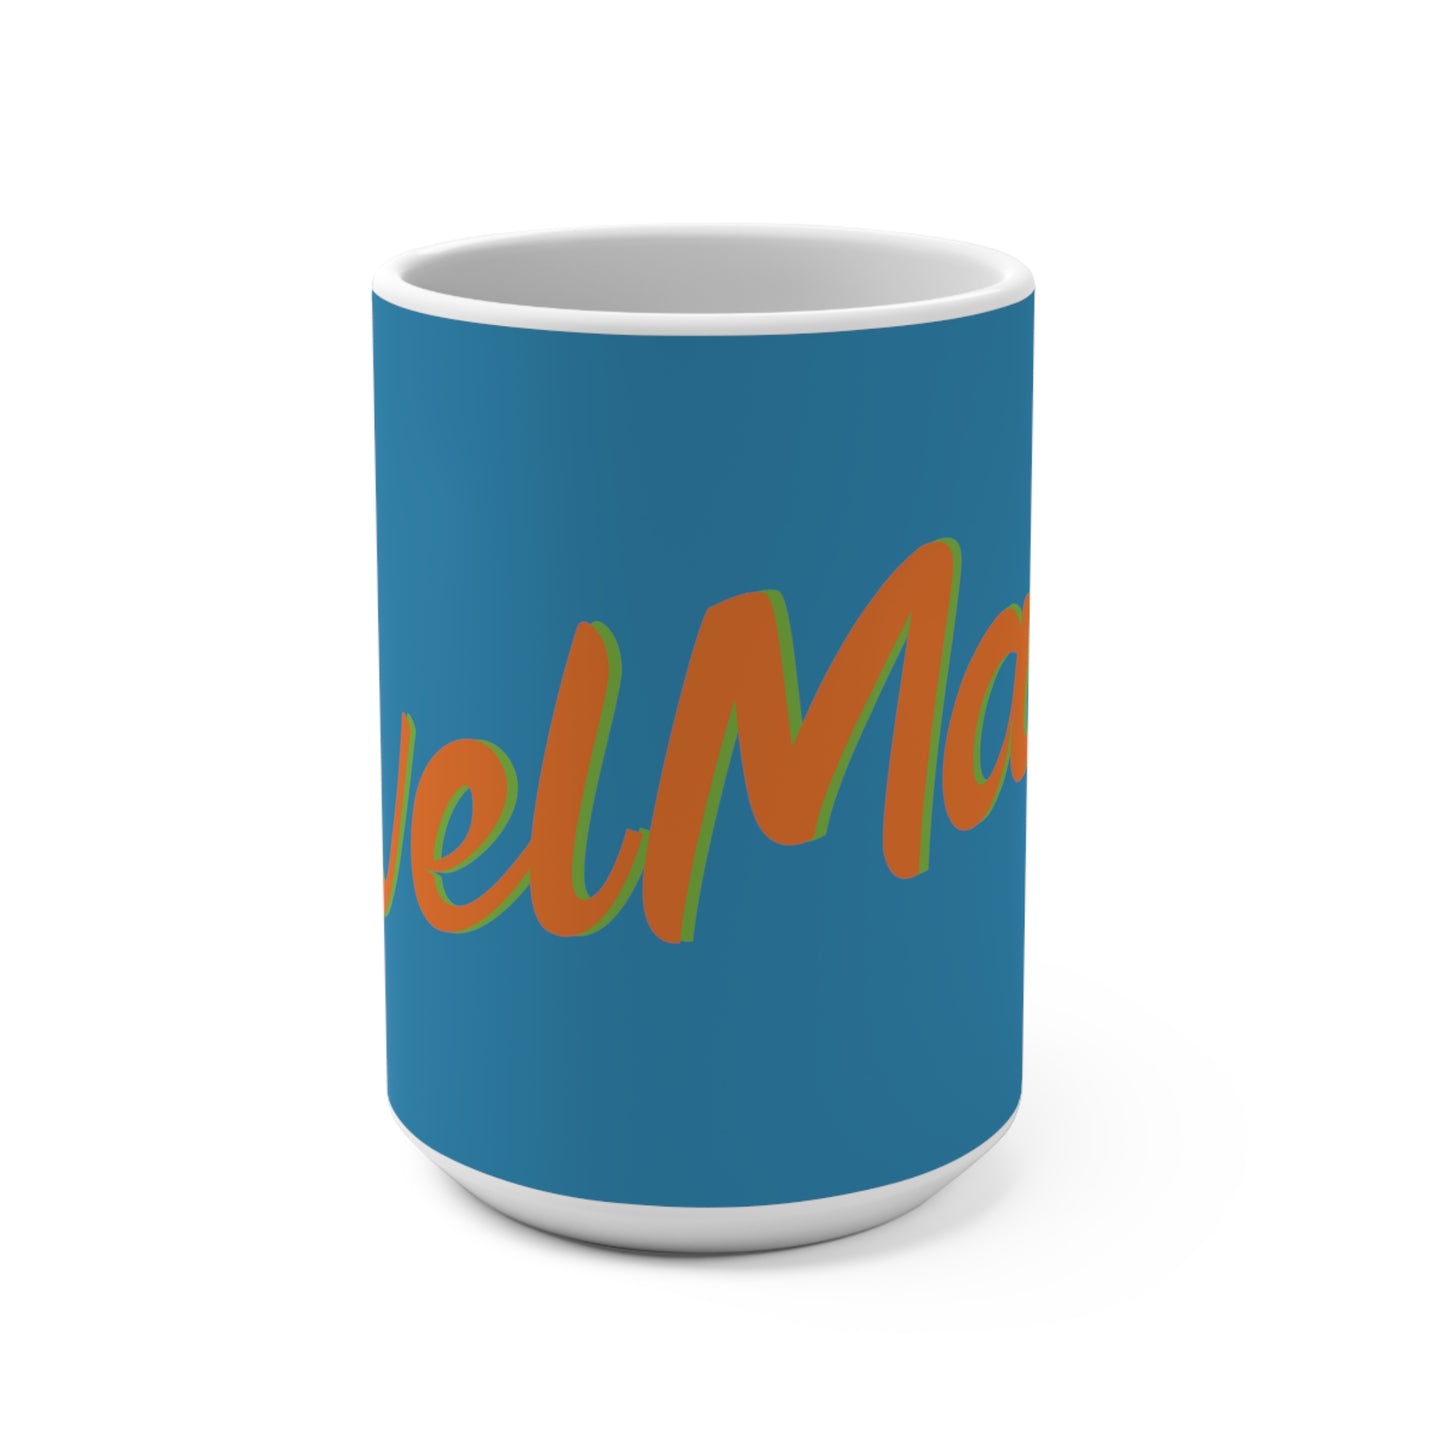 Ceramic Mug 15oz (440 ml) | Blue & Orange RevelMates Design